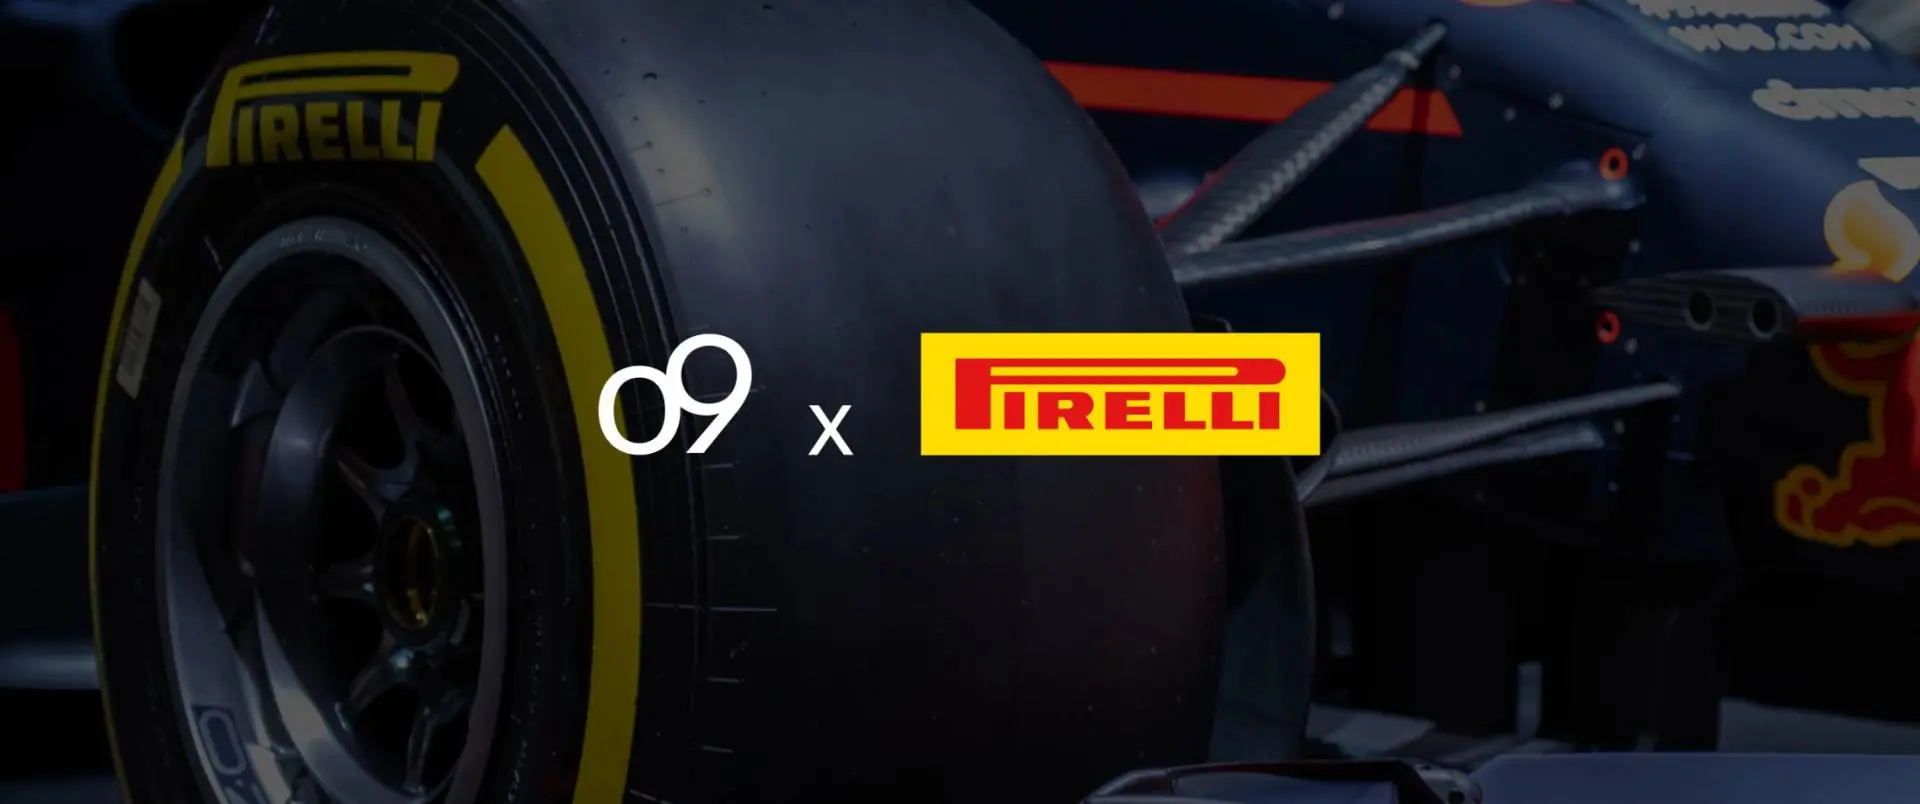 O9 pirelli